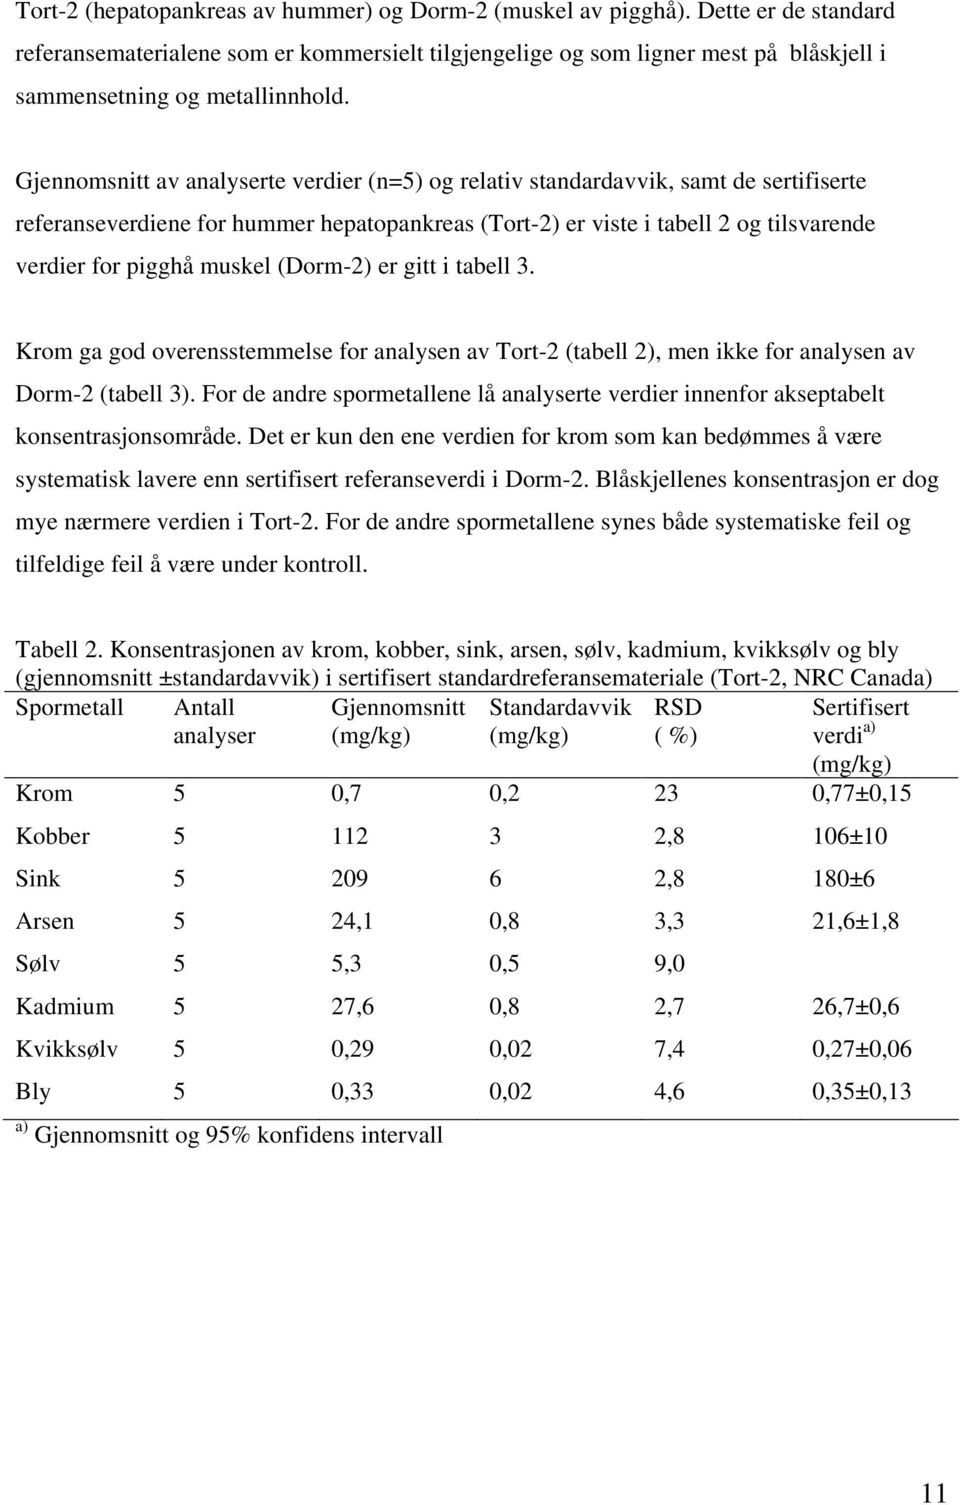 Gjennomsnitt av analyserte verdier (n=5) og relativ standardavvik, samt de sertifiserte referanseverdiene for hummer hepatopankreas (Tort-2) er viste i tabell 2 og tilsvarende verdier for pigghå